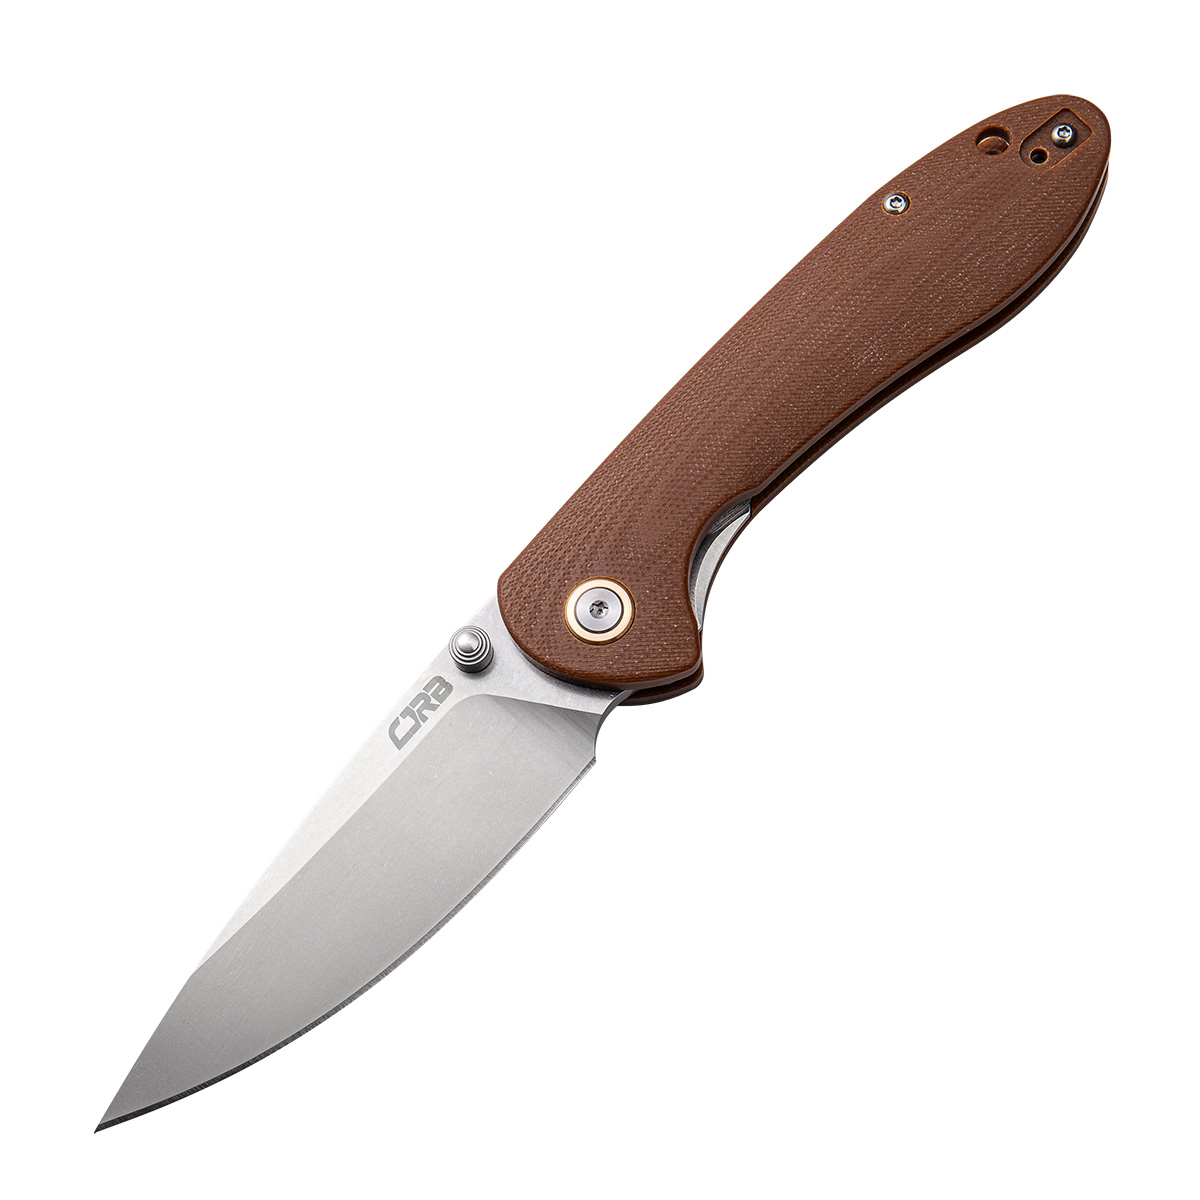 Складной нож CJRB Feldspar, сталь D2, Brown G10, Бренды, CJRB Cutlery